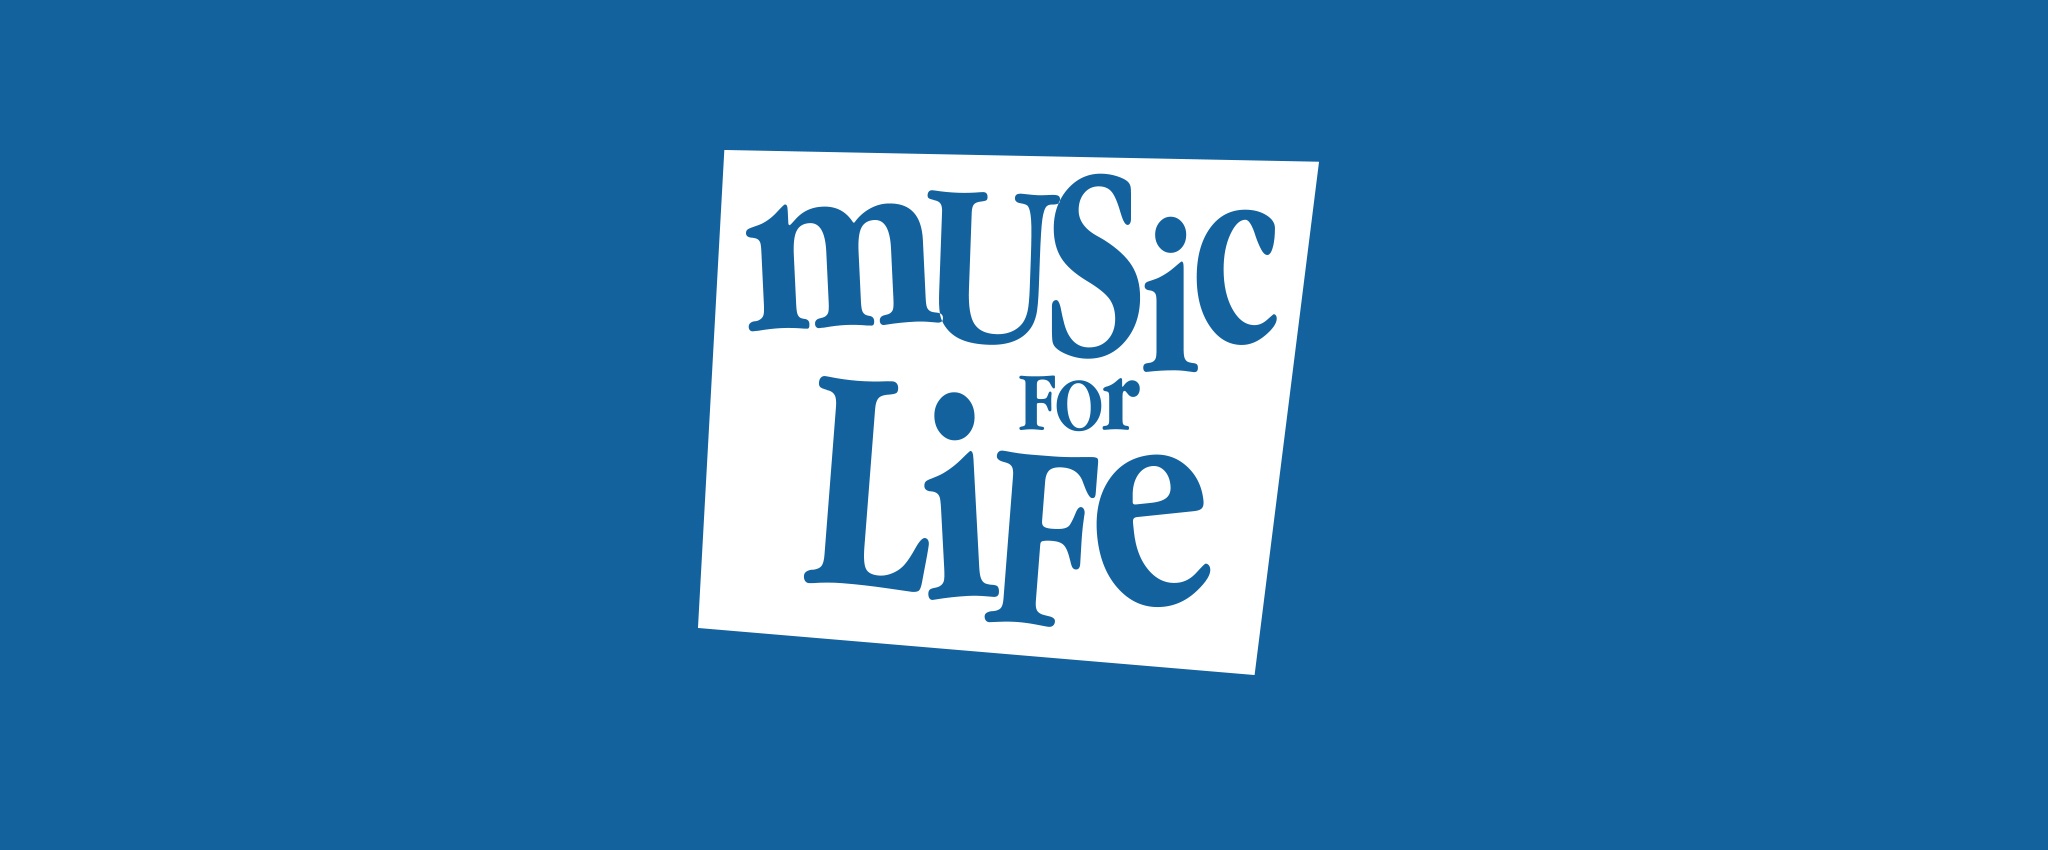 Music for Life - Blue logo